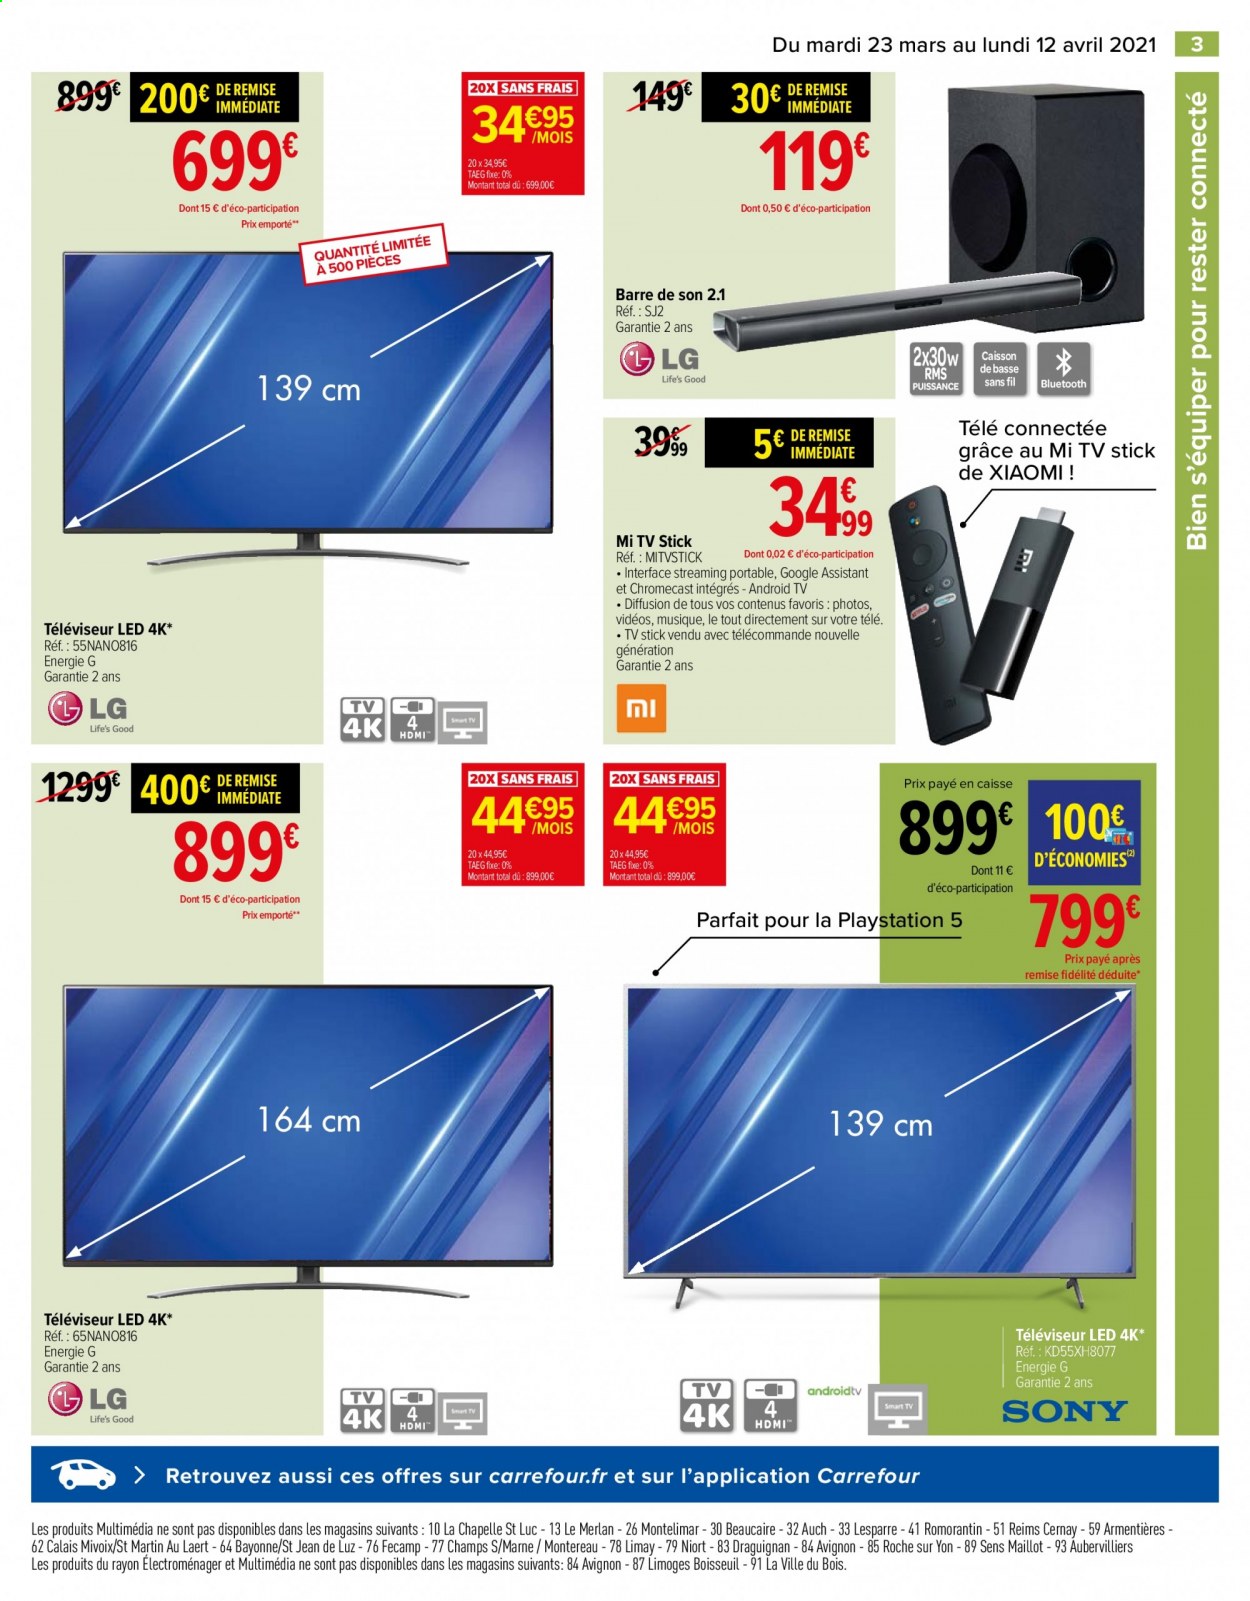 thumbnail - Catalogue Carrefour Hypermarchés - 23/03/2021 - 12/04/2021 - Produits soldés - Xiaomi, Playstation, PS5, téléviseur, android tv, téléviseur LED, barre de son. Page 3.